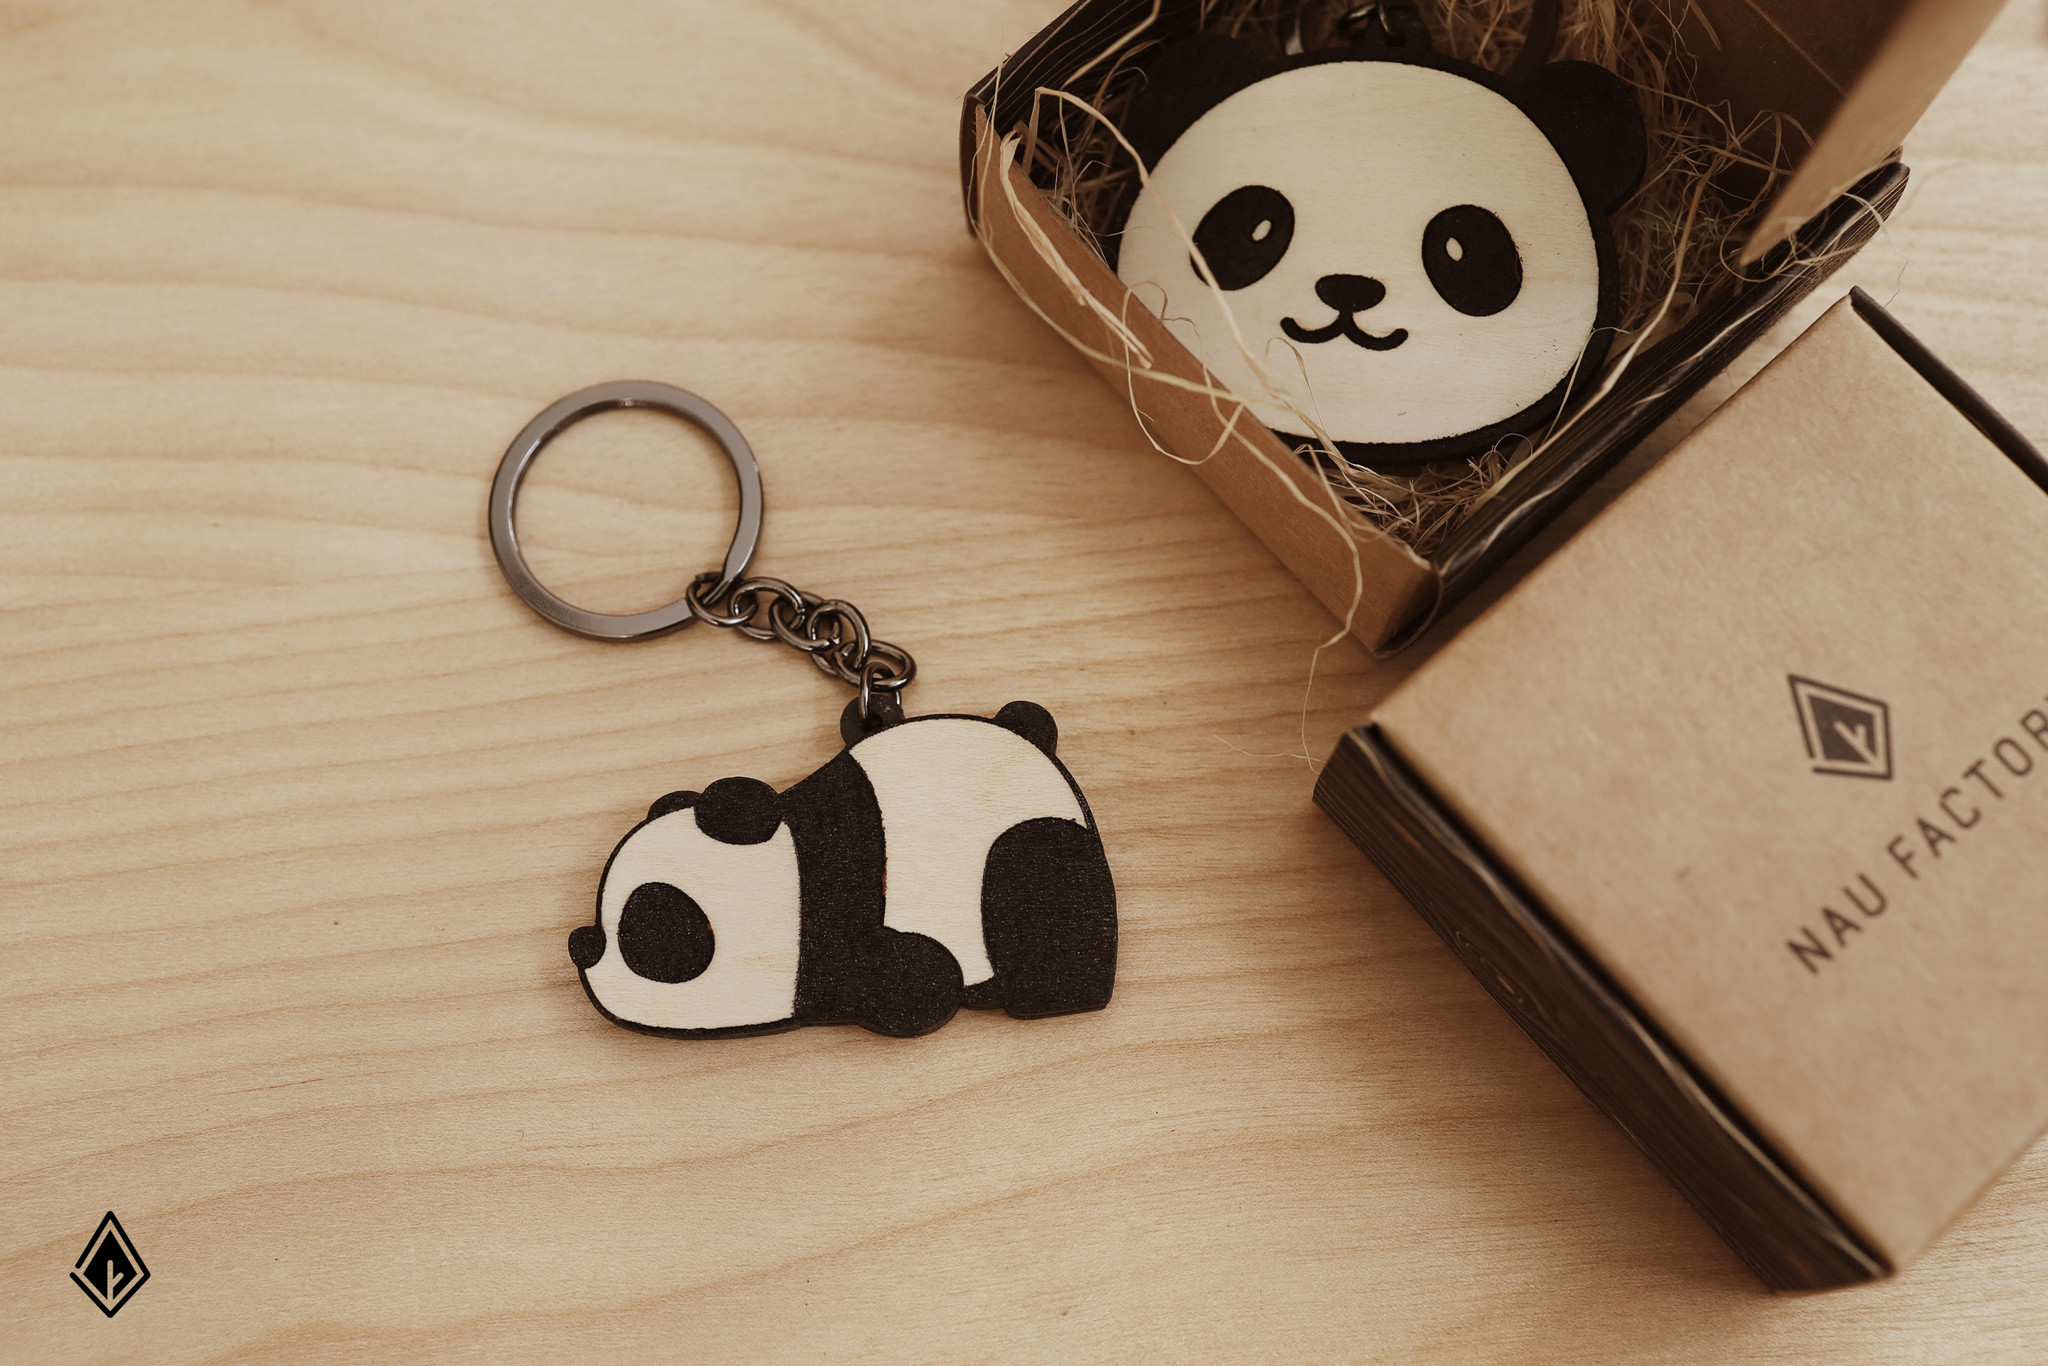 Móc khóa Panda vừa dễ thương vừa mang ý nghĩa phúc lành.